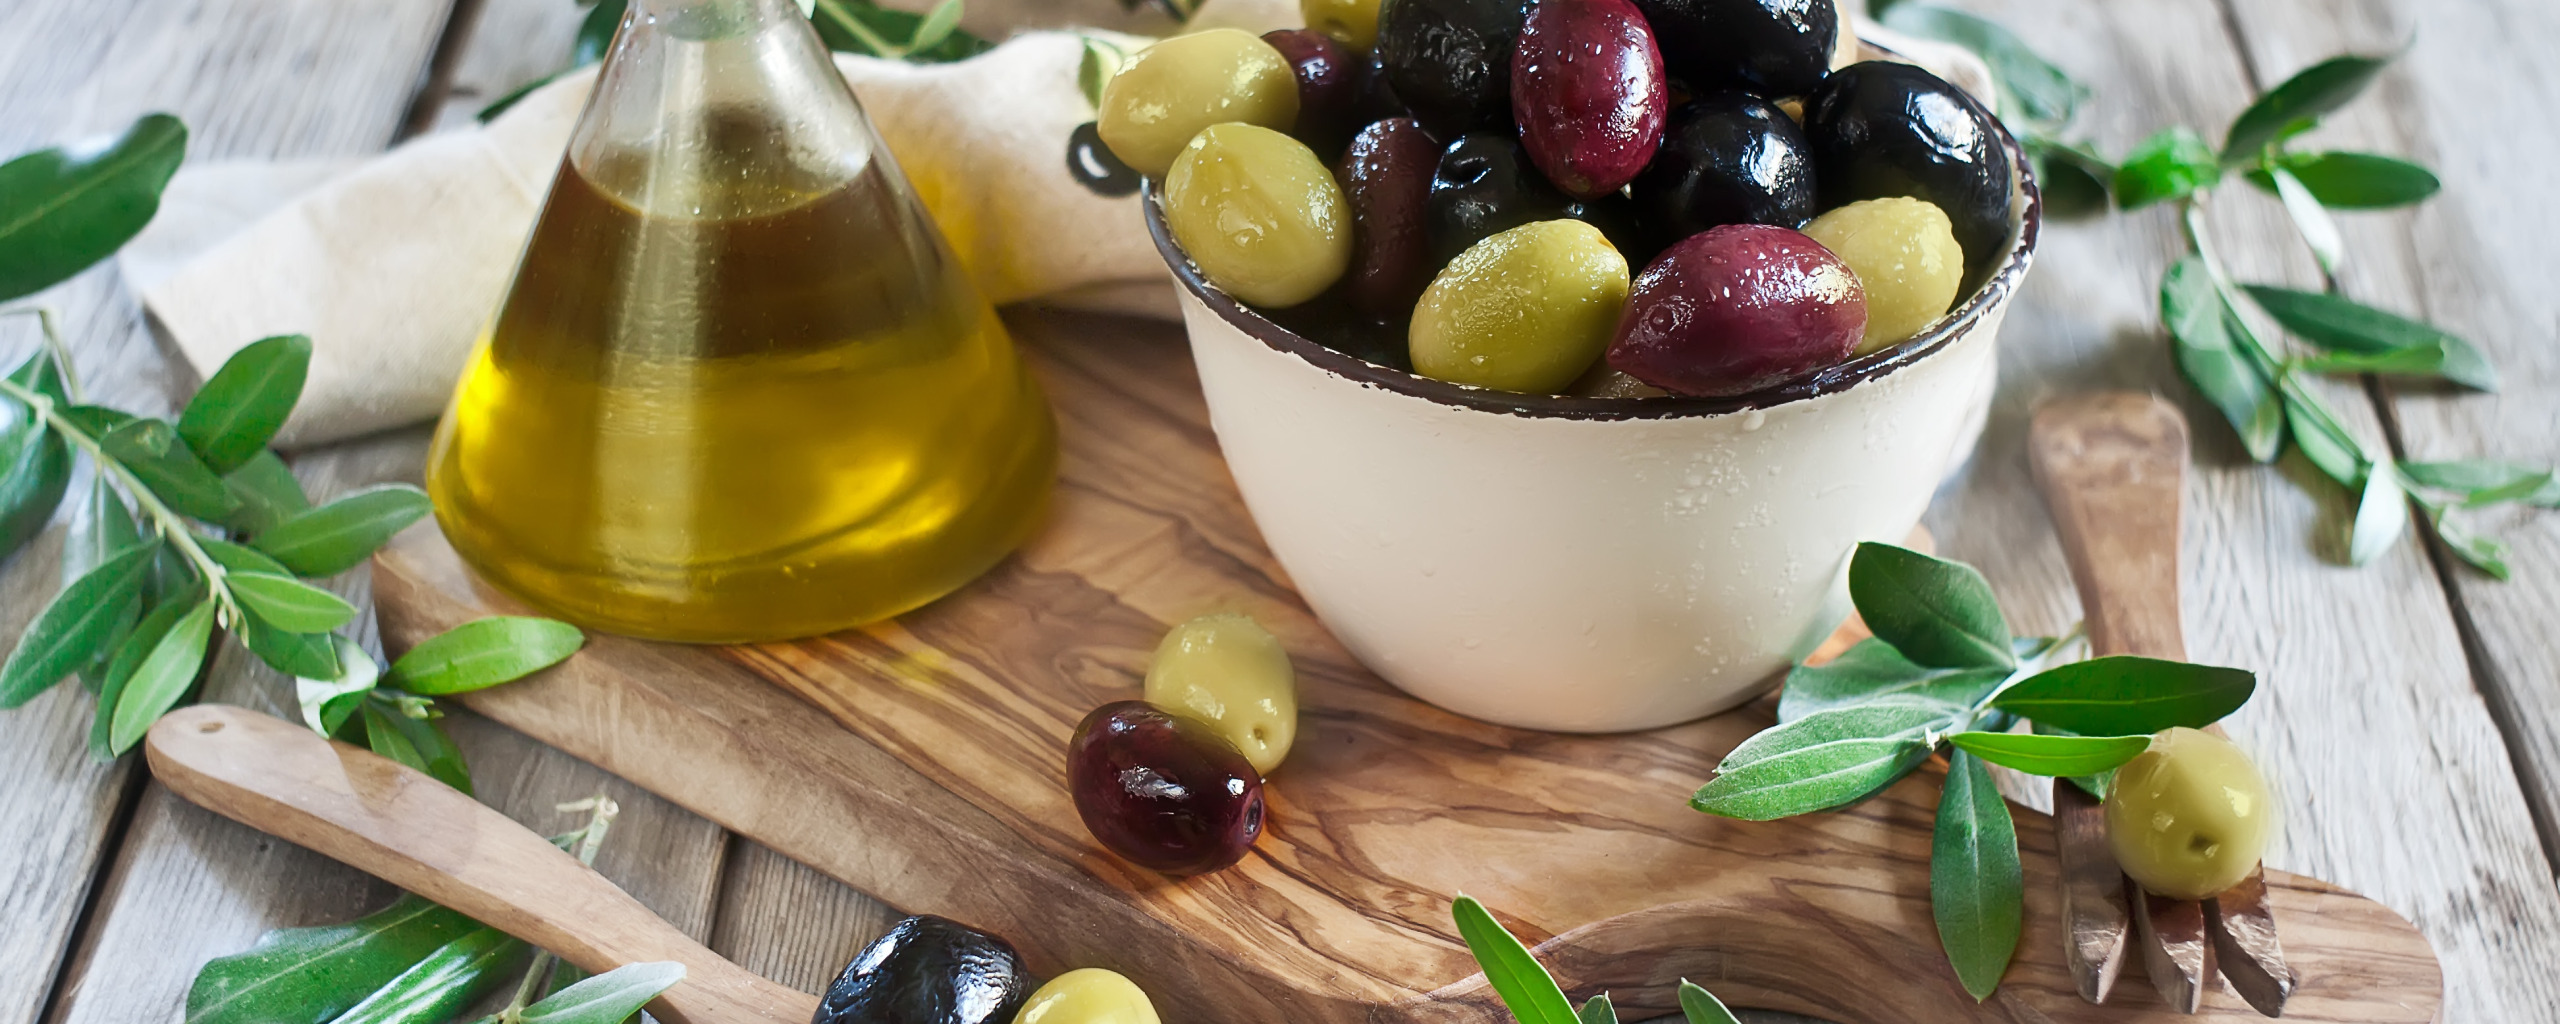 Оливки. Маслины. Оливковое масло и маслины. Оливки фото. Оливковое масло замерзло в холодильнике